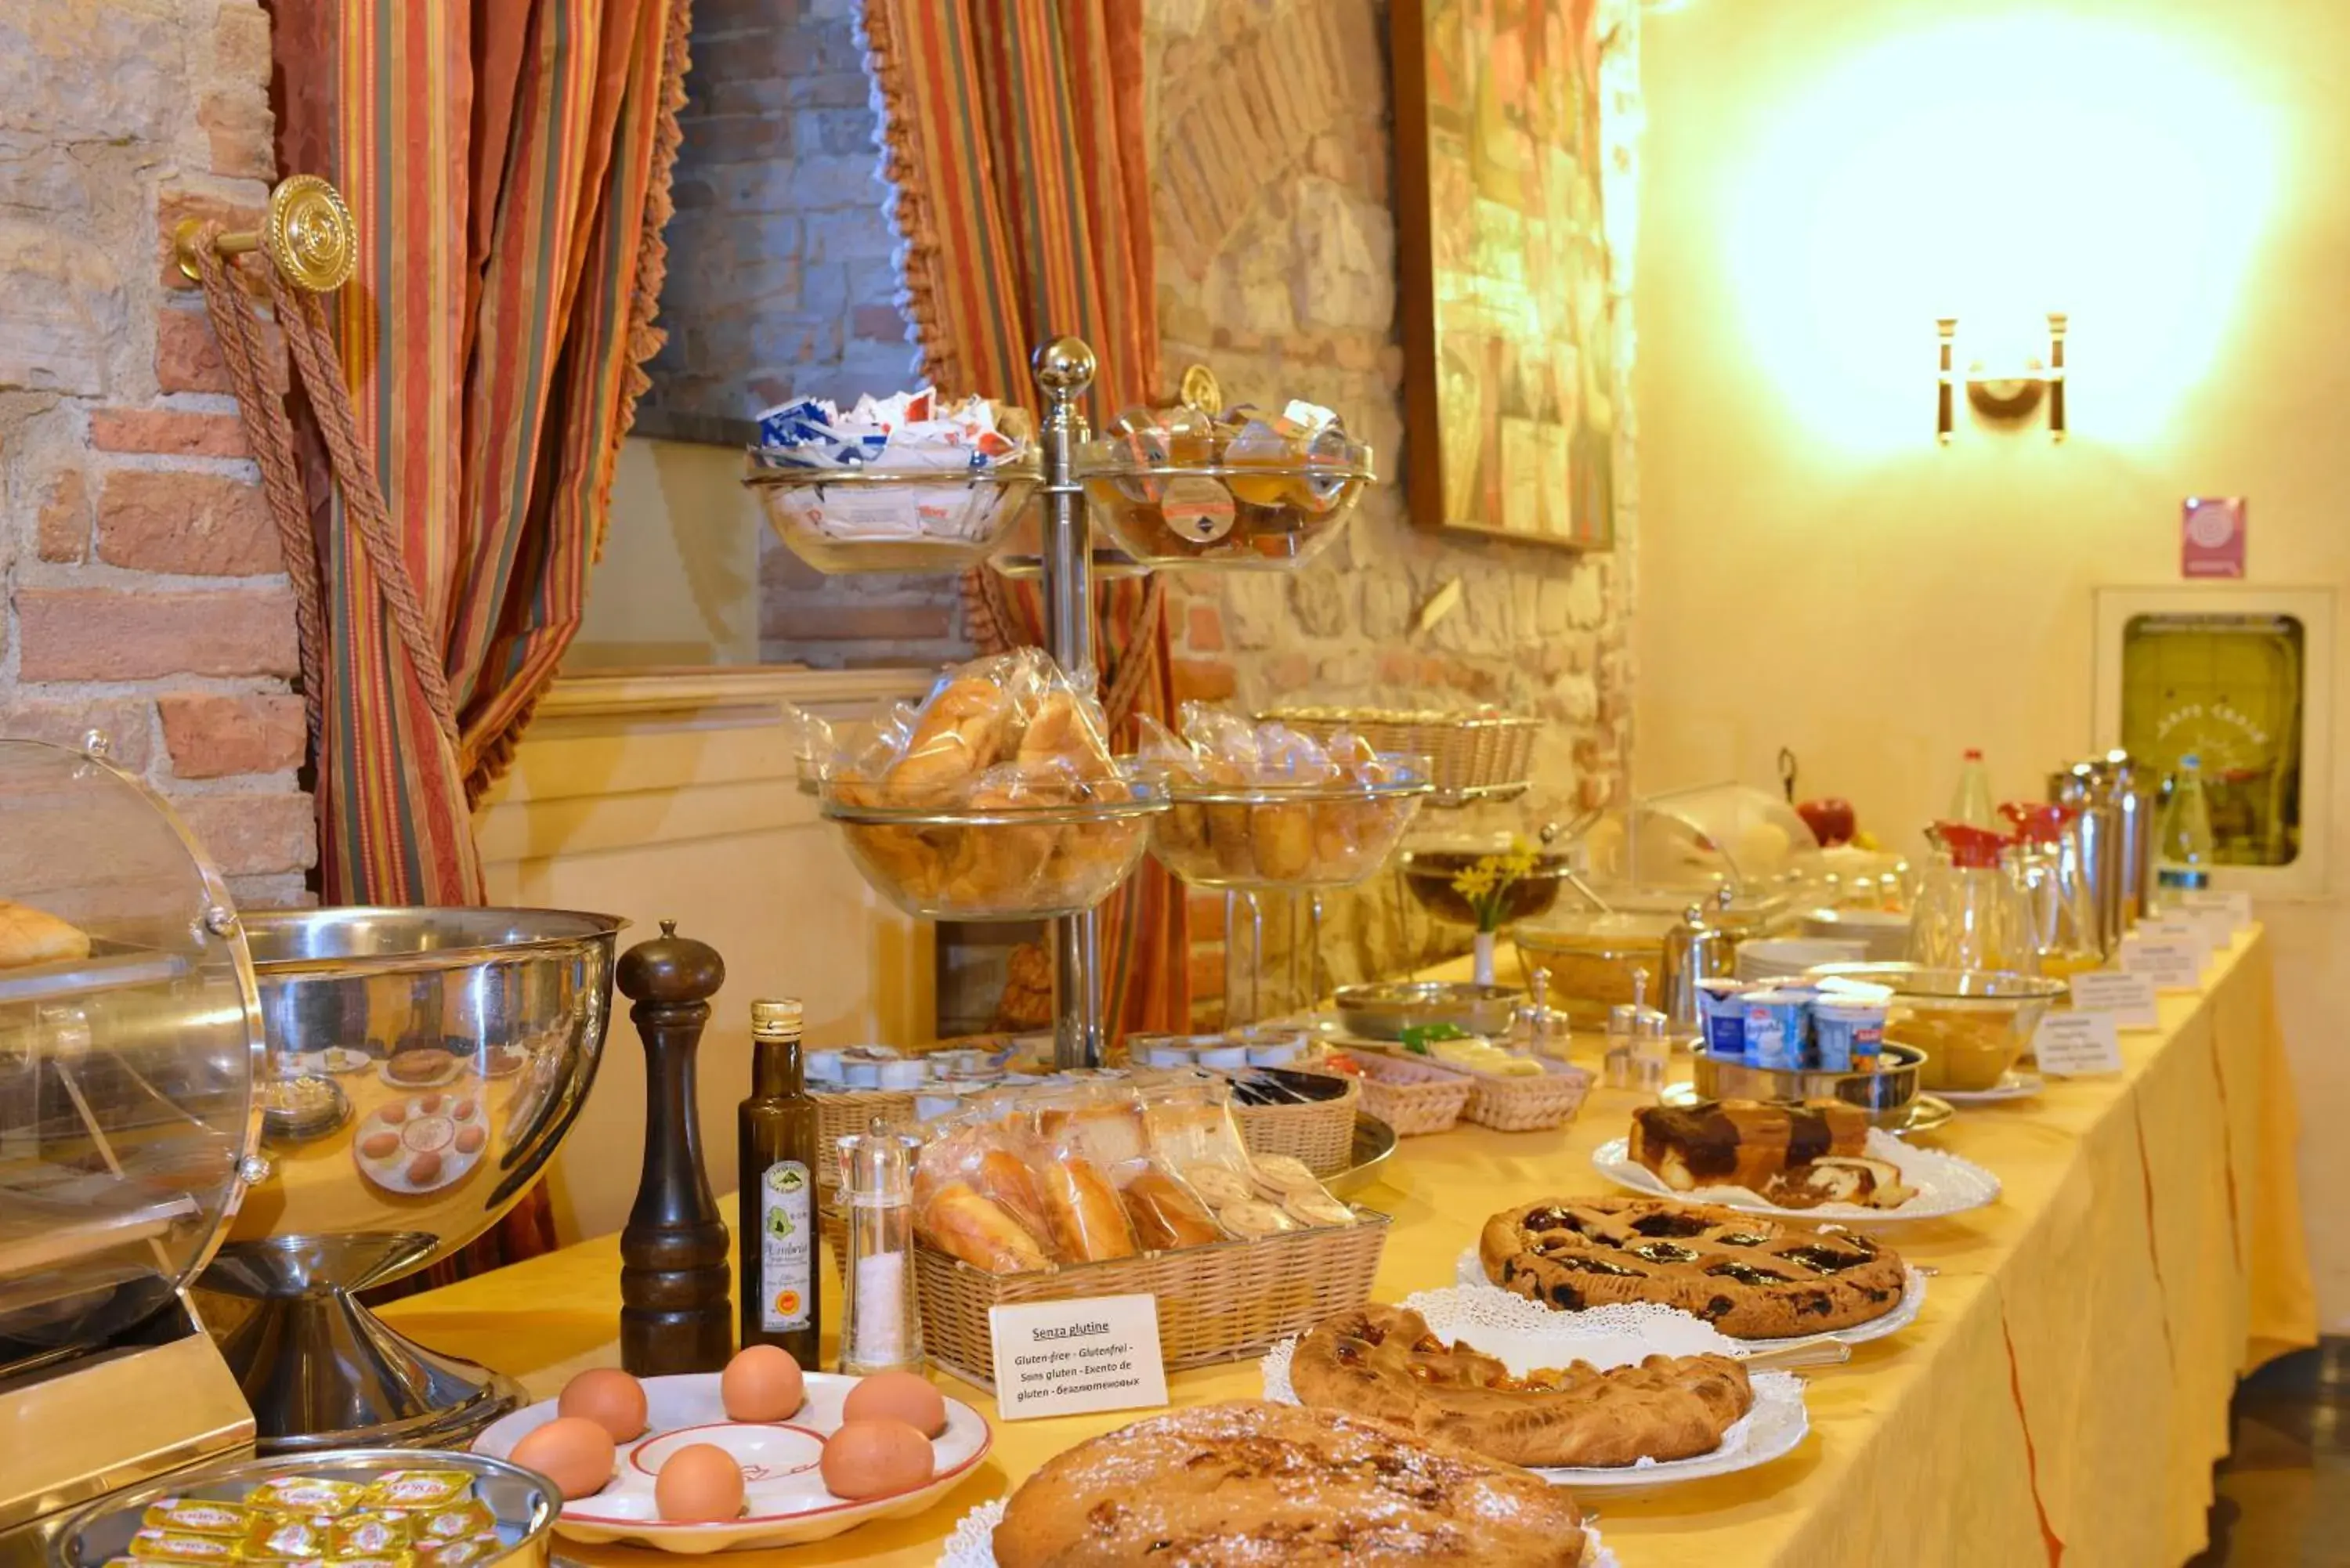 Buffet breakfast in Hotel Fonte Cesia